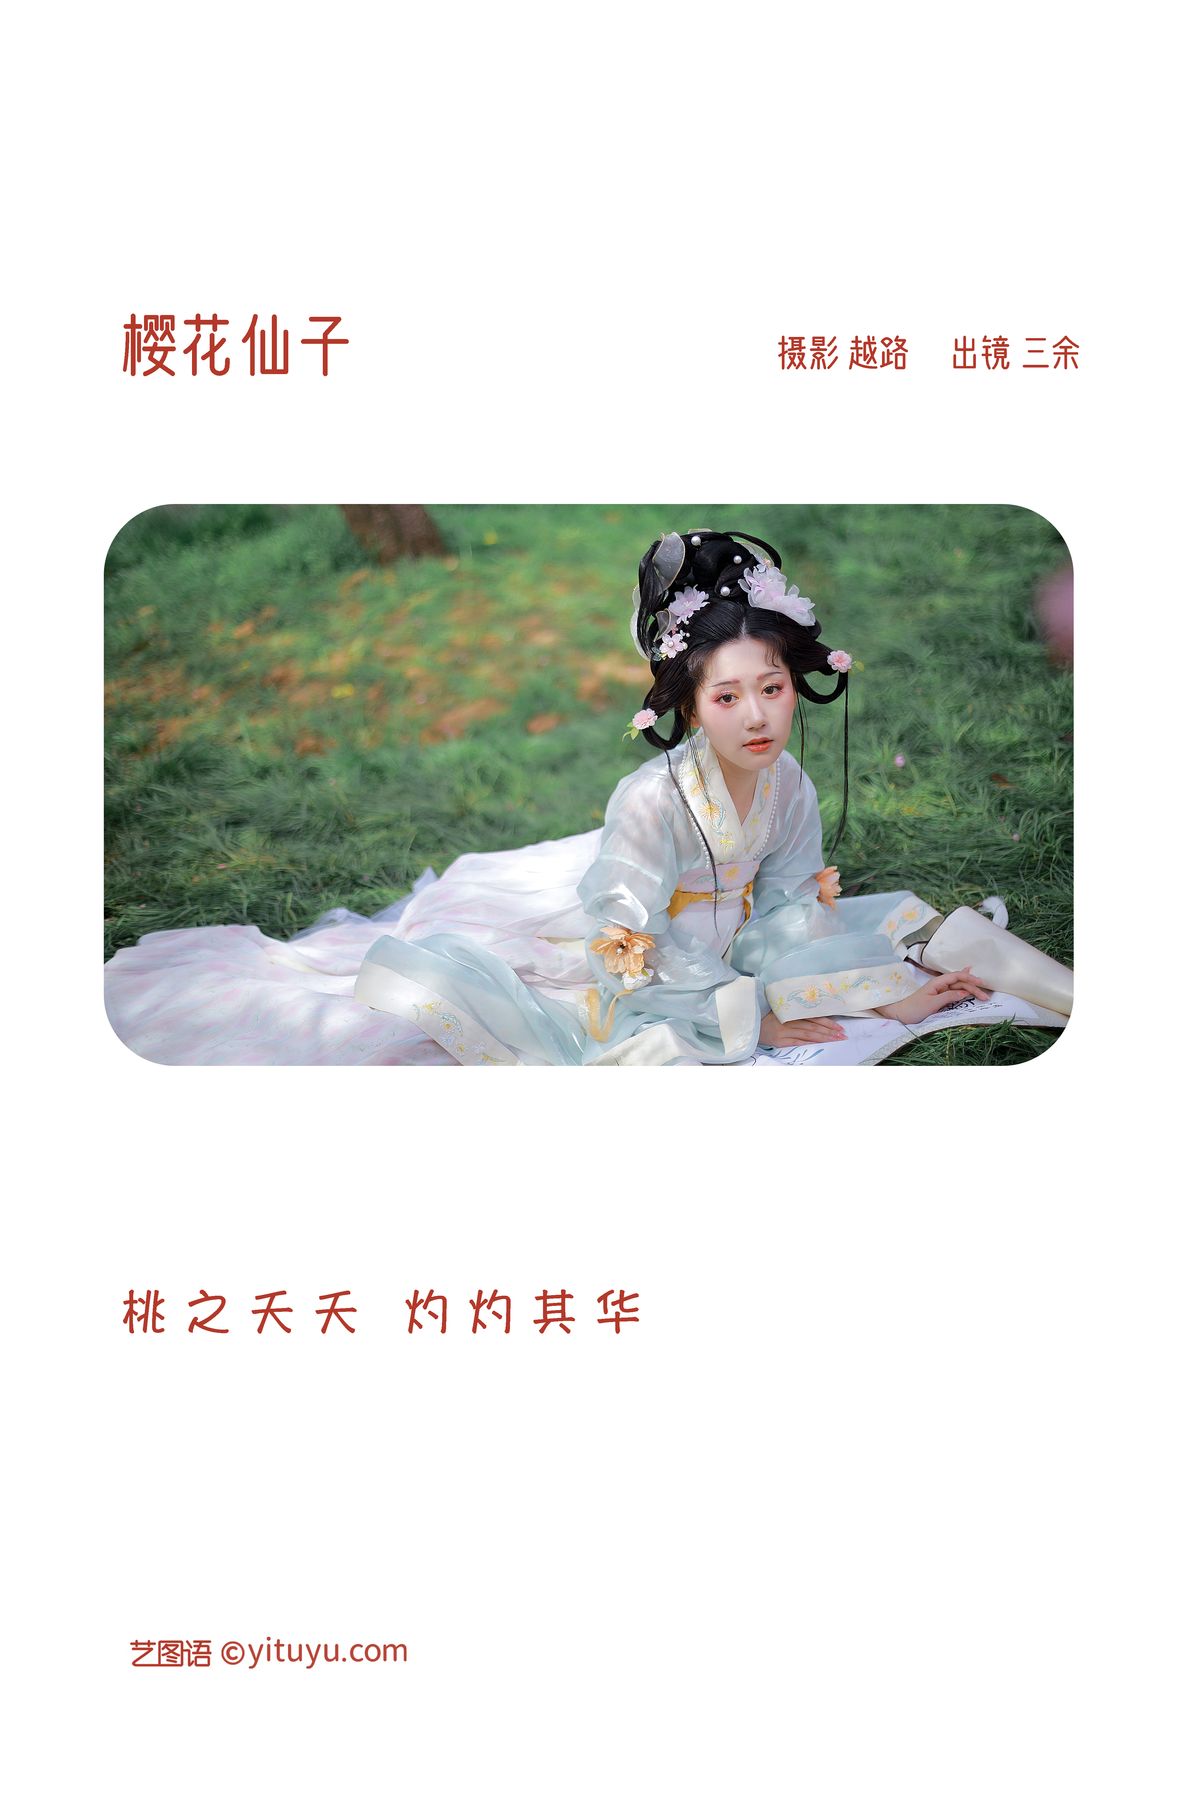 YiTuYu艺图语 Vol 3271 San Yu 0001 0248911582.jpg